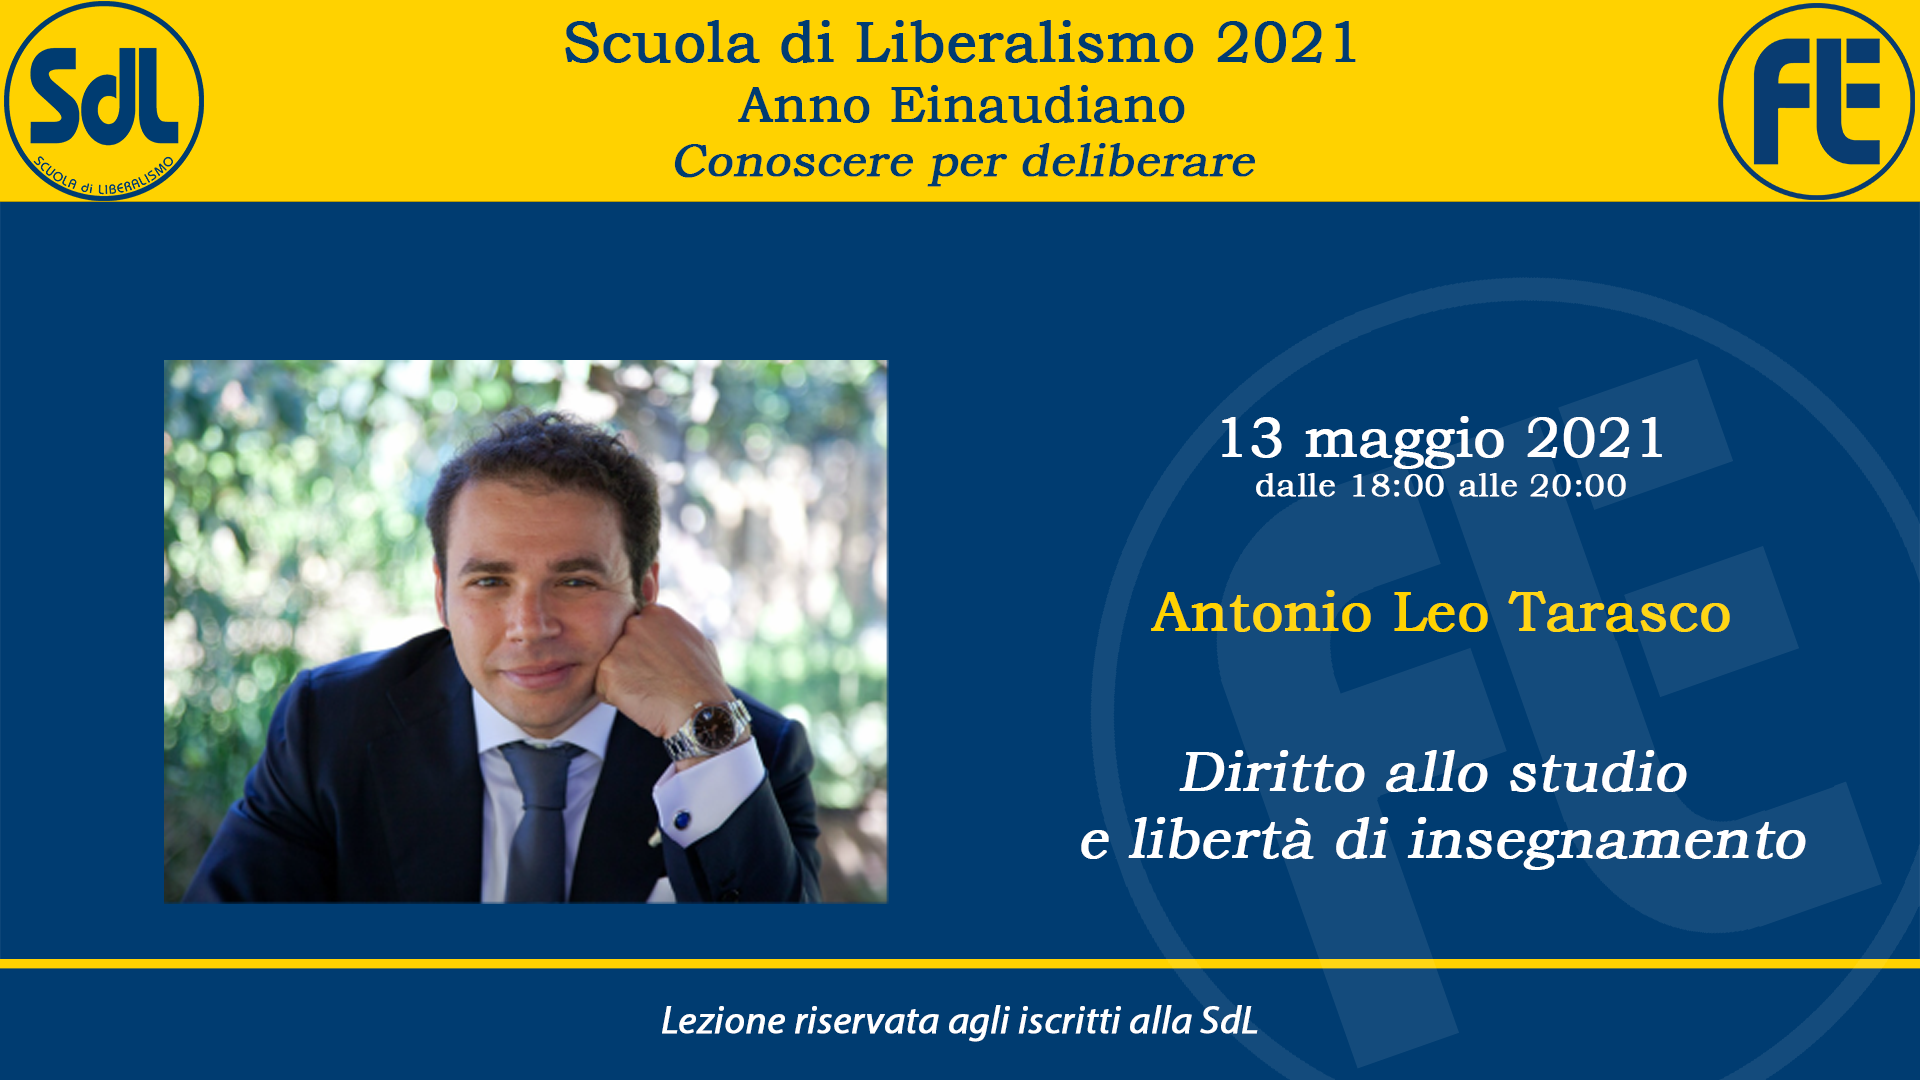 Scuola di Liberalismo 2021 – Antonio Leo Tarasco sul tema “Diritto allo studio e libertà di insegnamento”